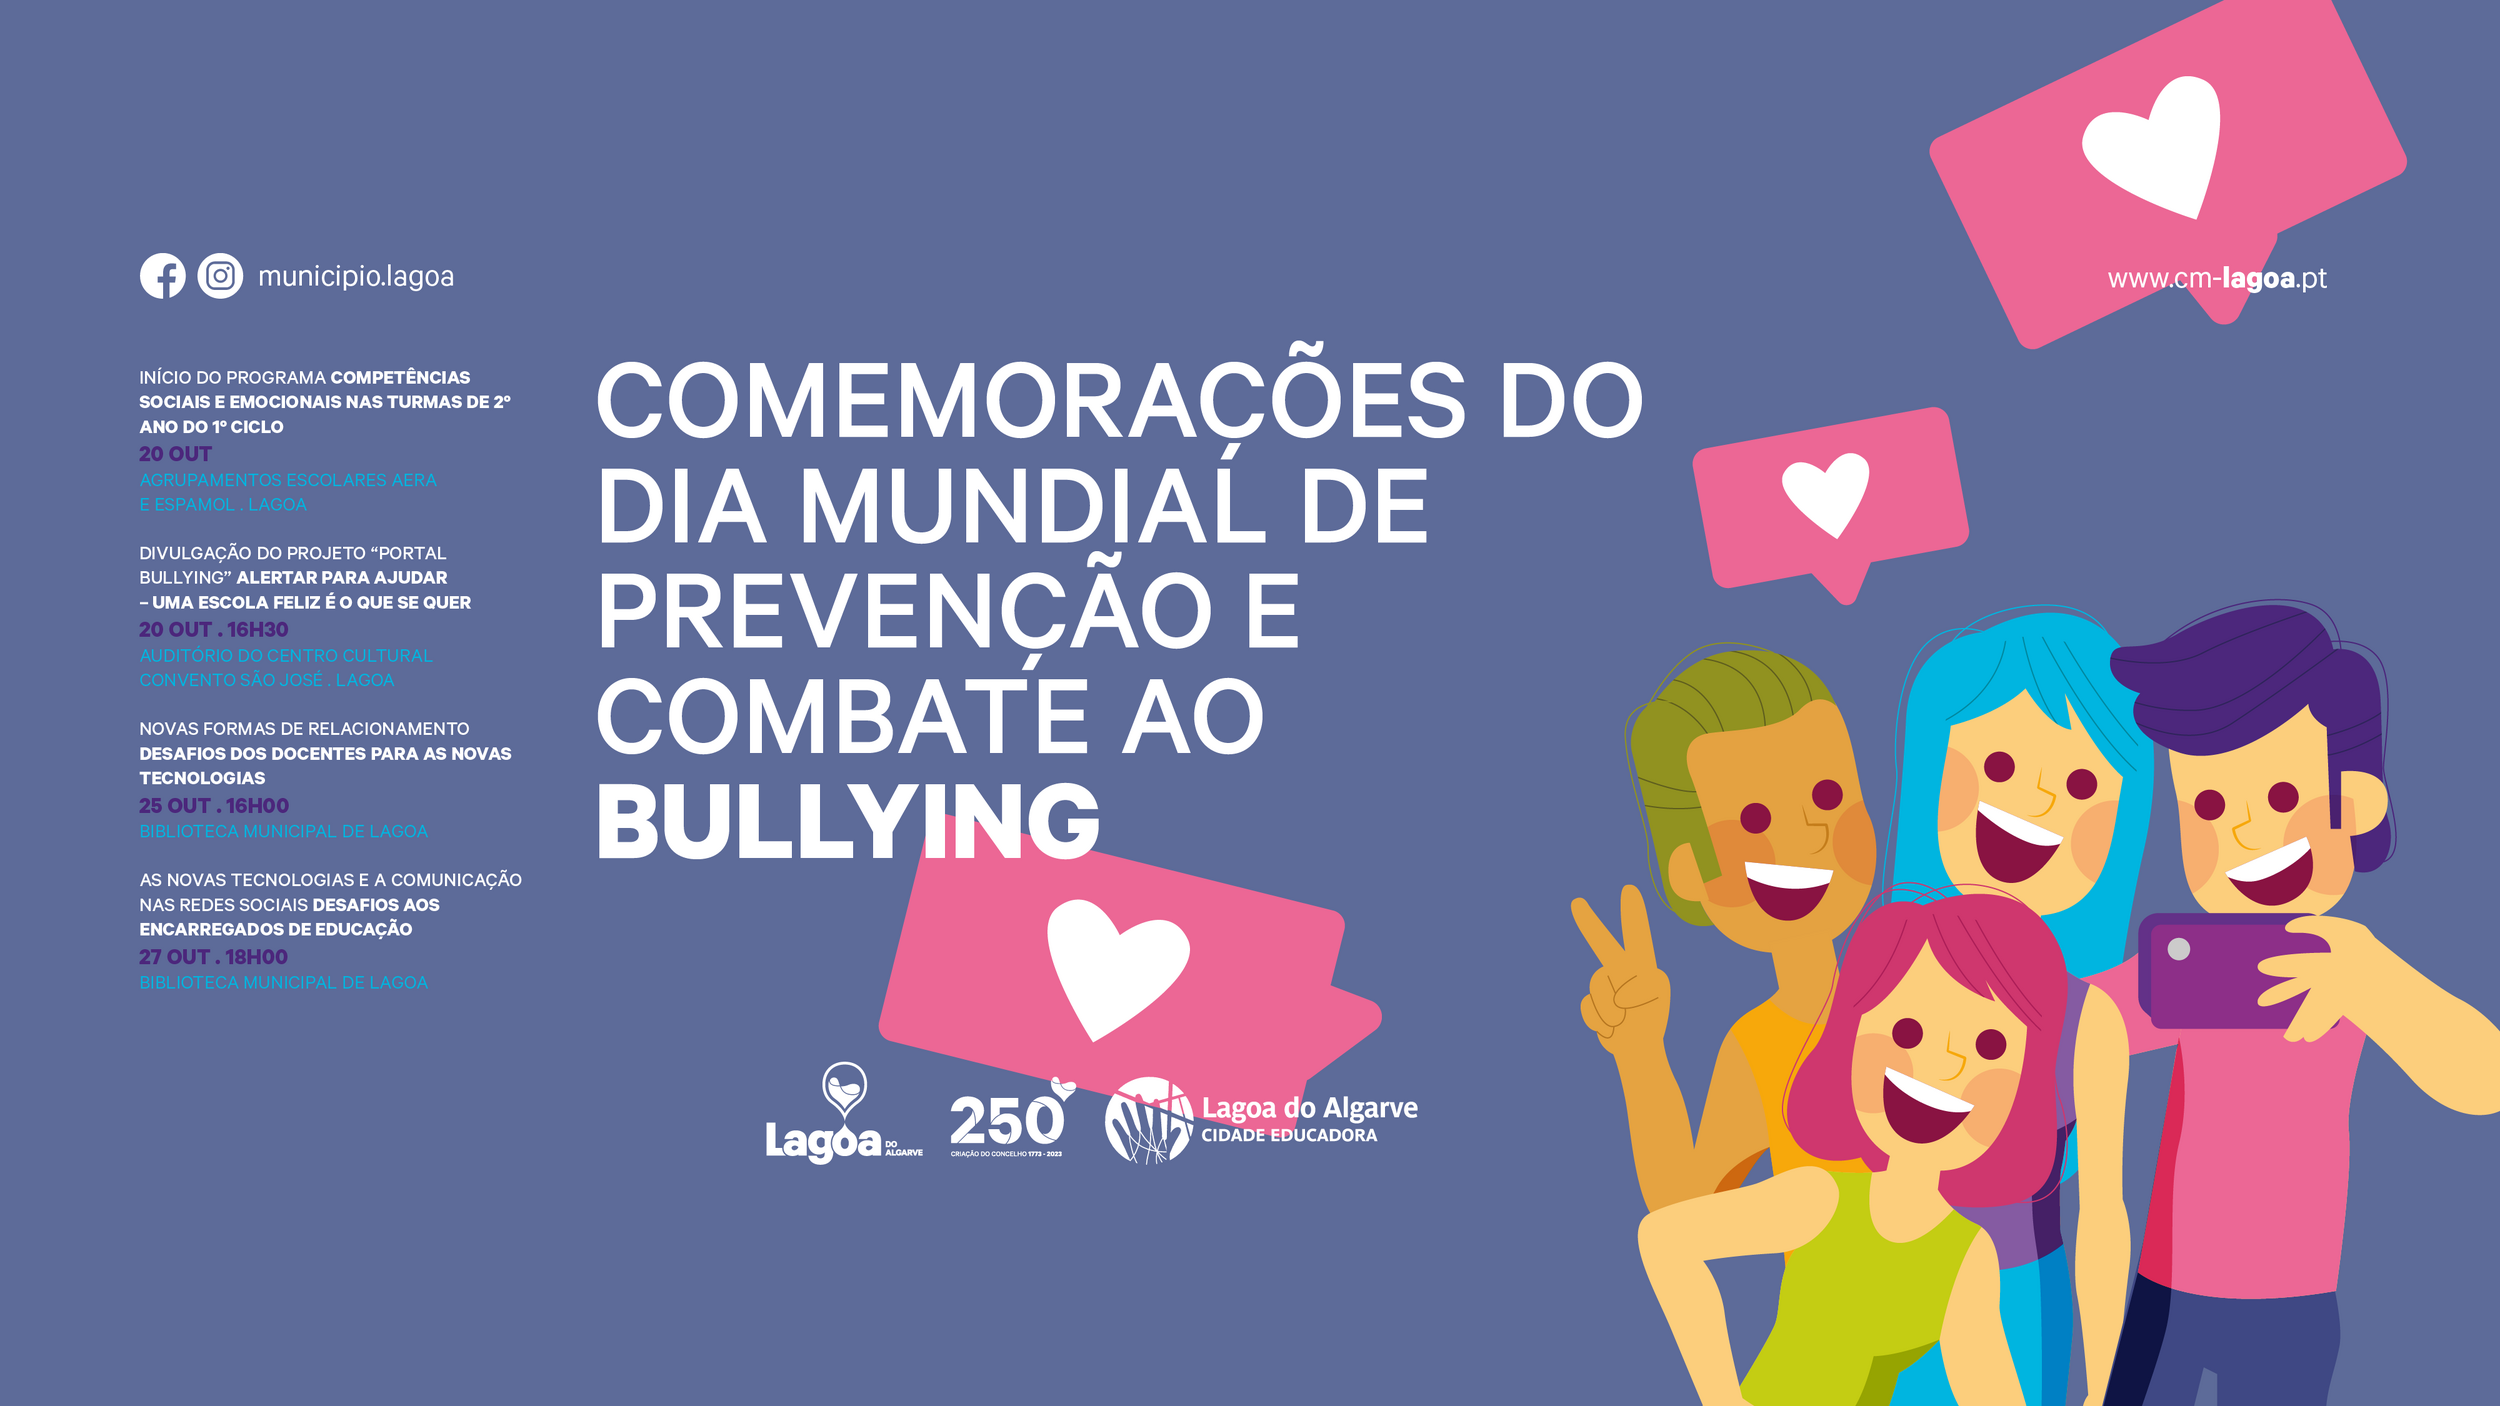 Comemorações do Dia Mundial de Prevenção e Combate ao Bullying